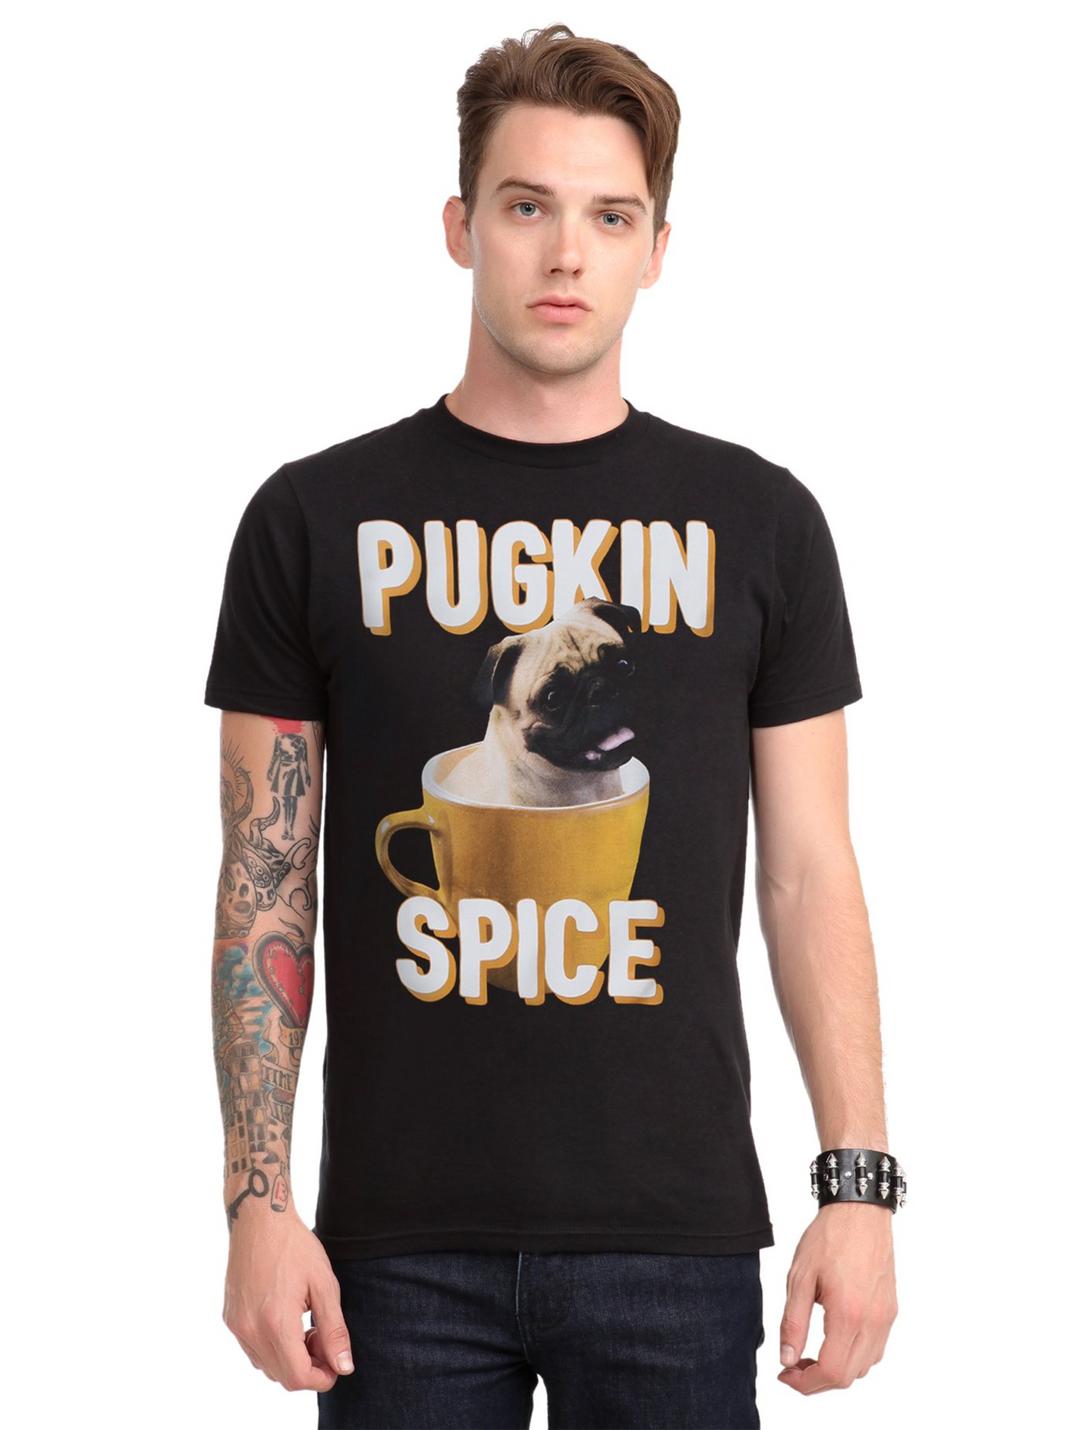 Pugkin Spice T-Shirt, BLACK, hi-res